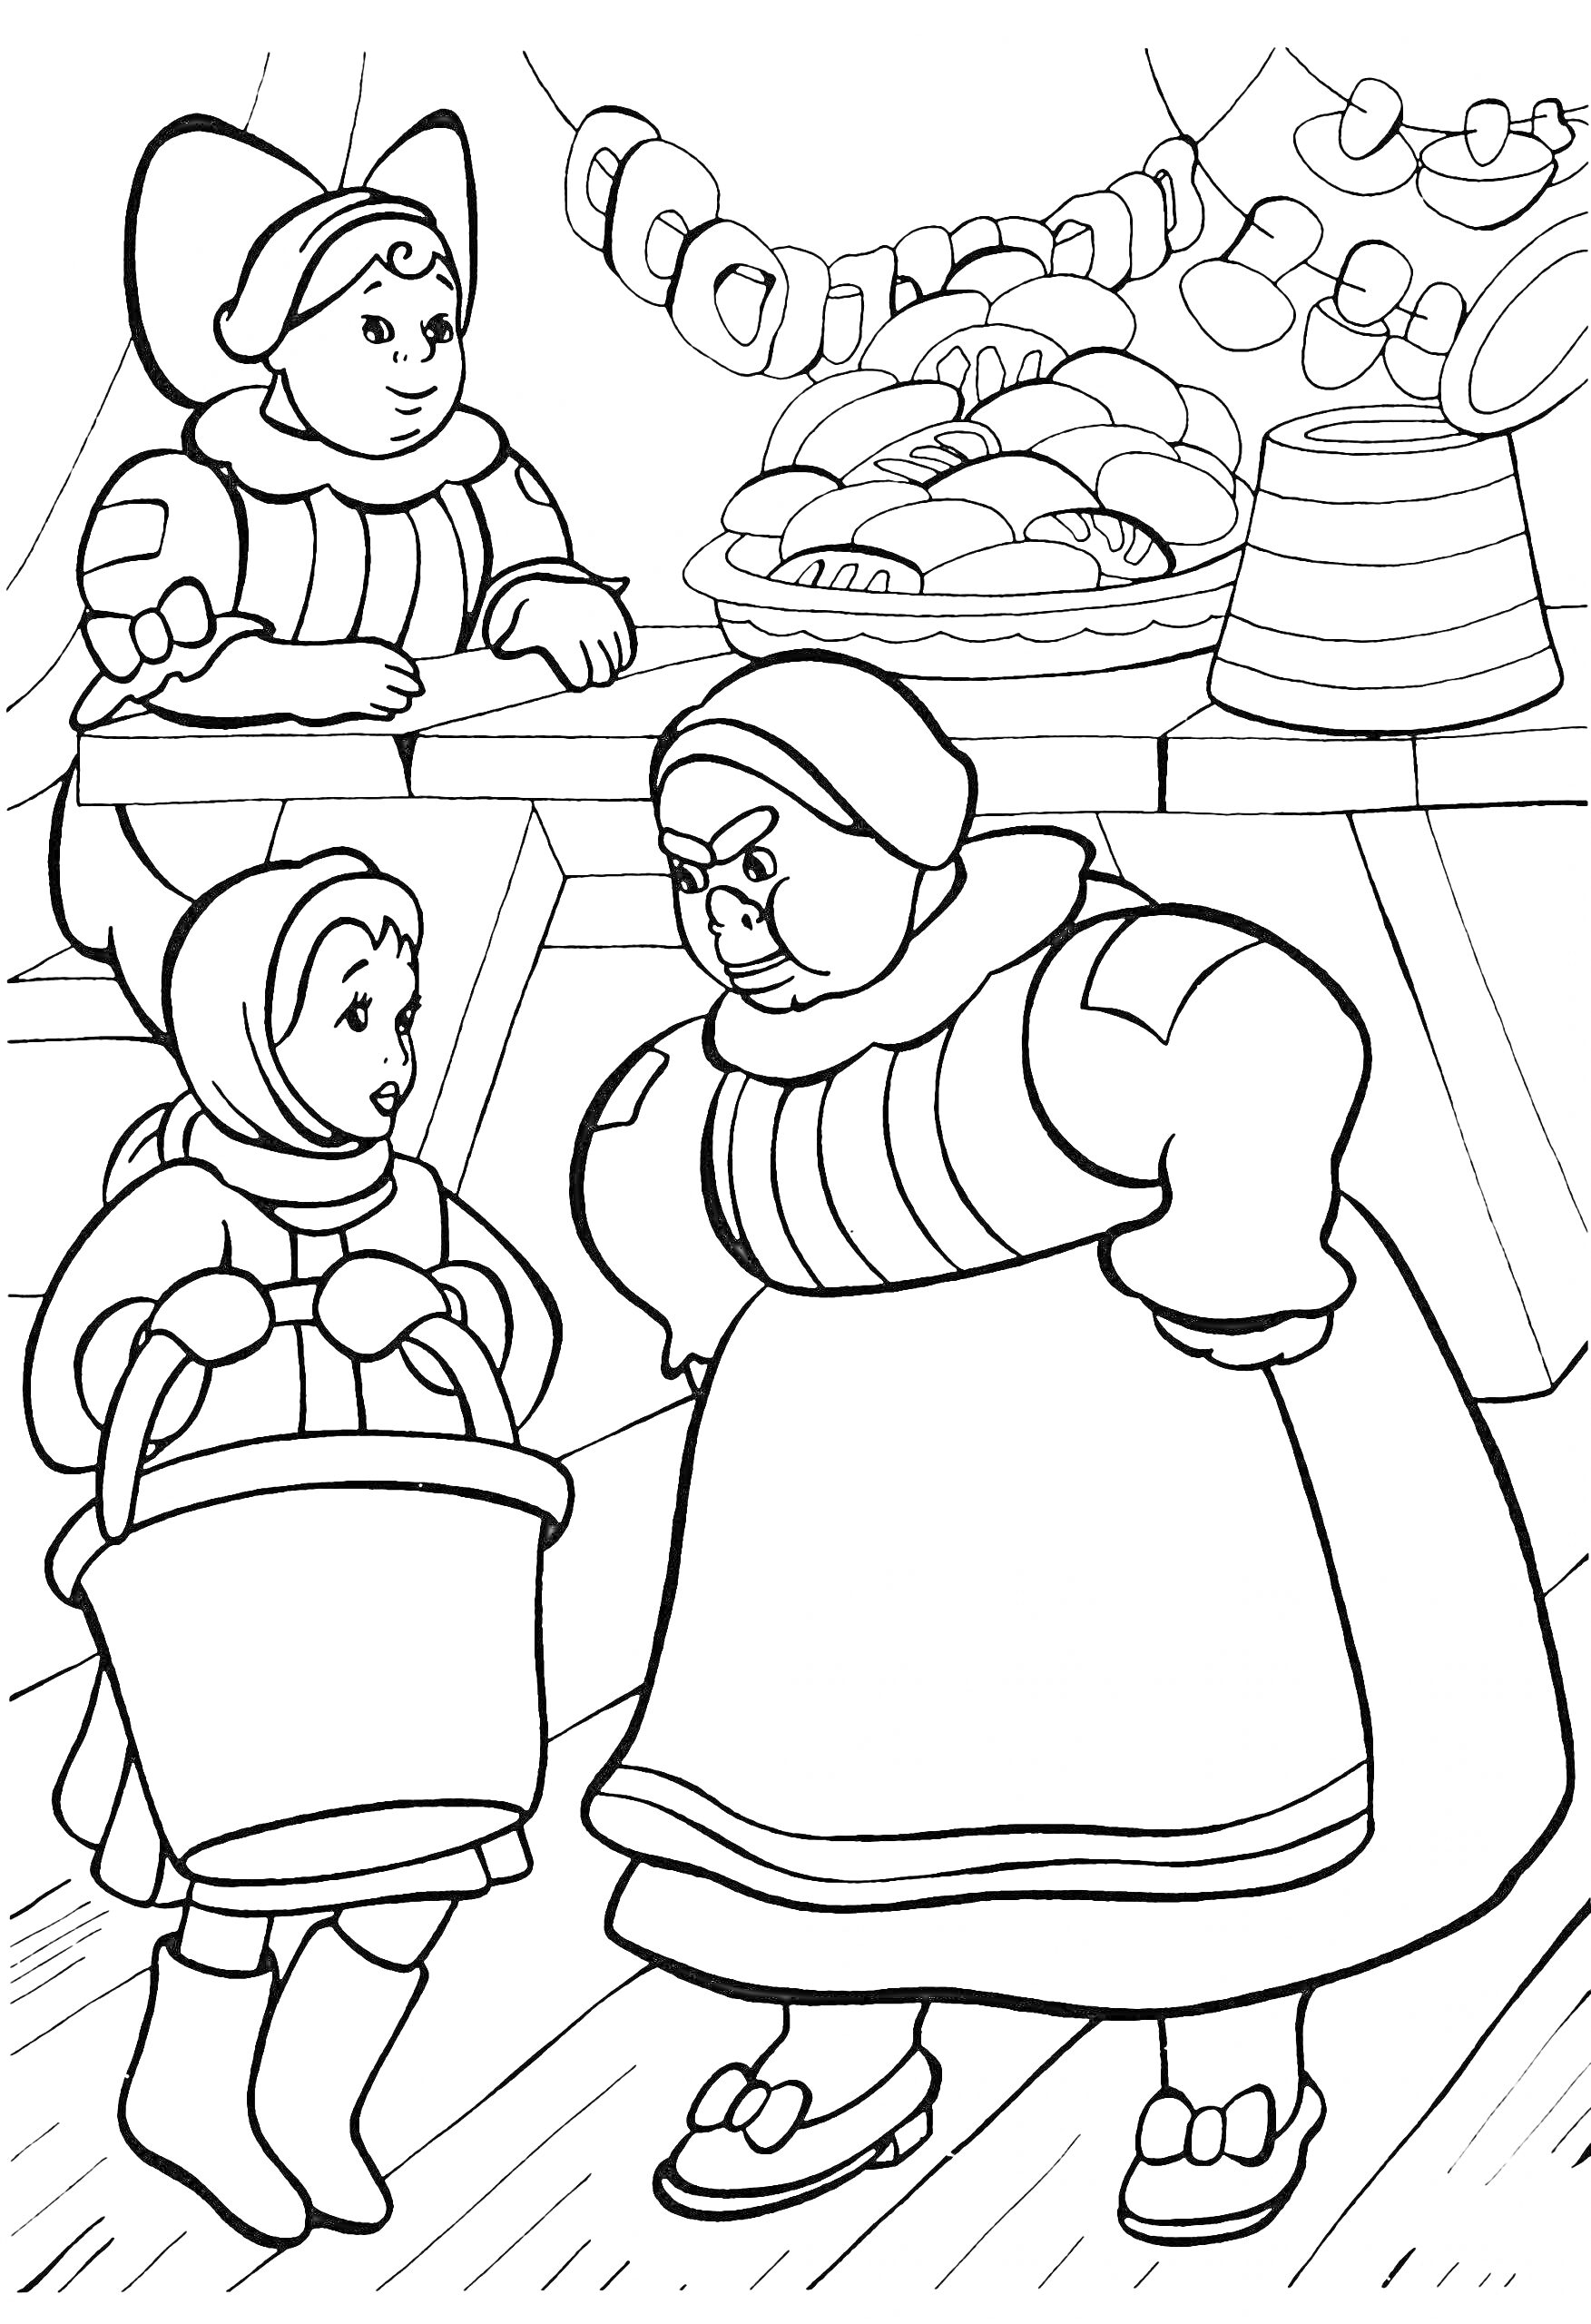 Раскраска Рынок в новогодней сказке, продавщица, покупательница с корзиной, лавка с хлебом и колбасой